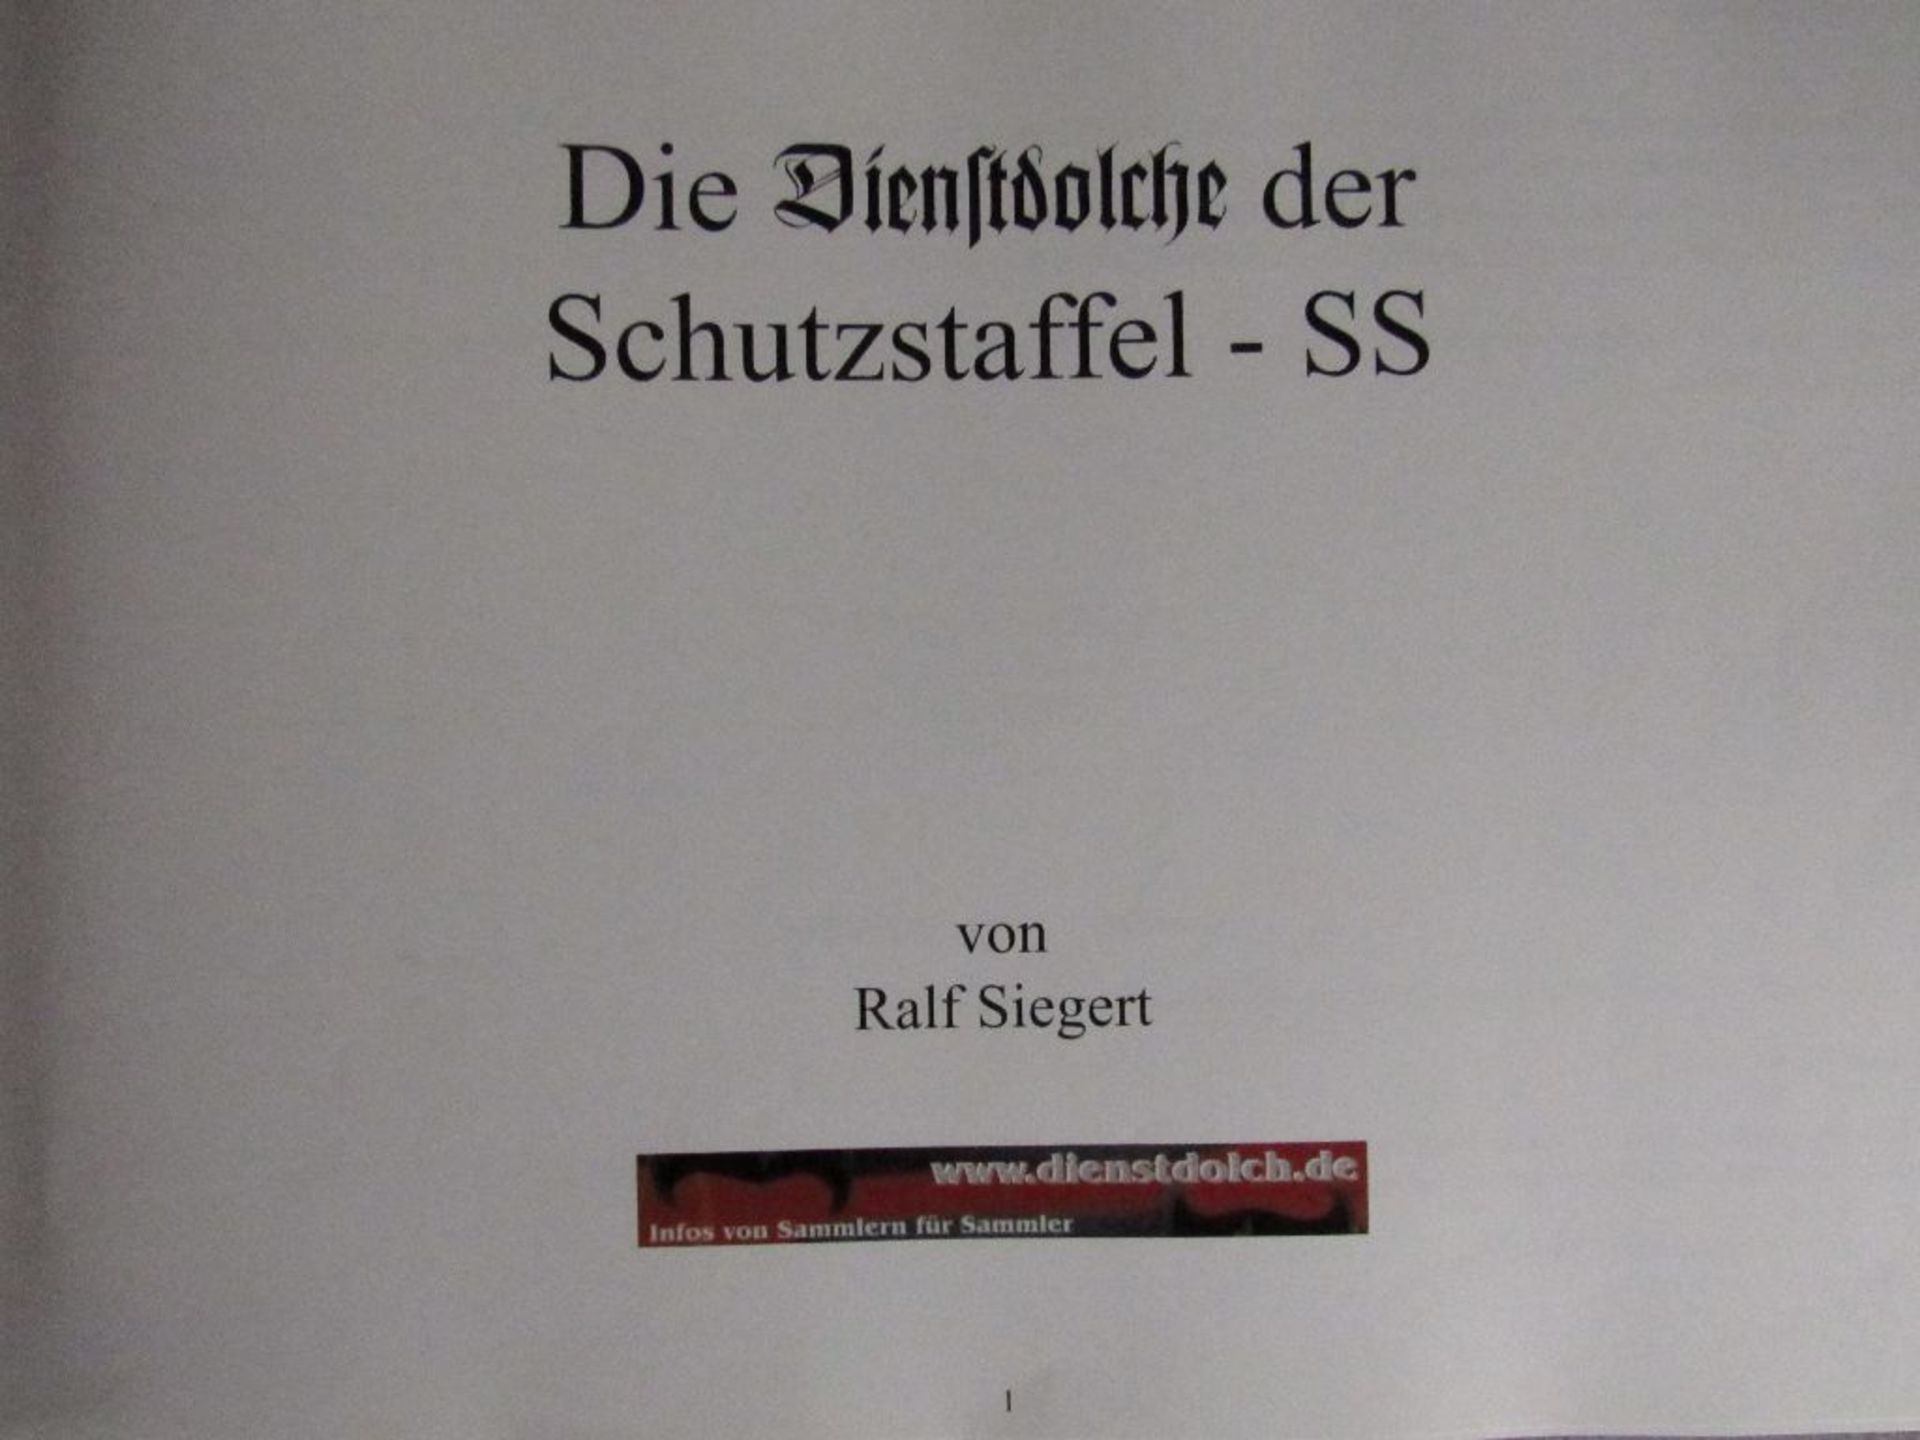 Sehr seltenes Buch Referenzbuch zur Bestimmung der Dienstdolche für SS ein Muss für jeden Sammler<b - Image 2 of 7